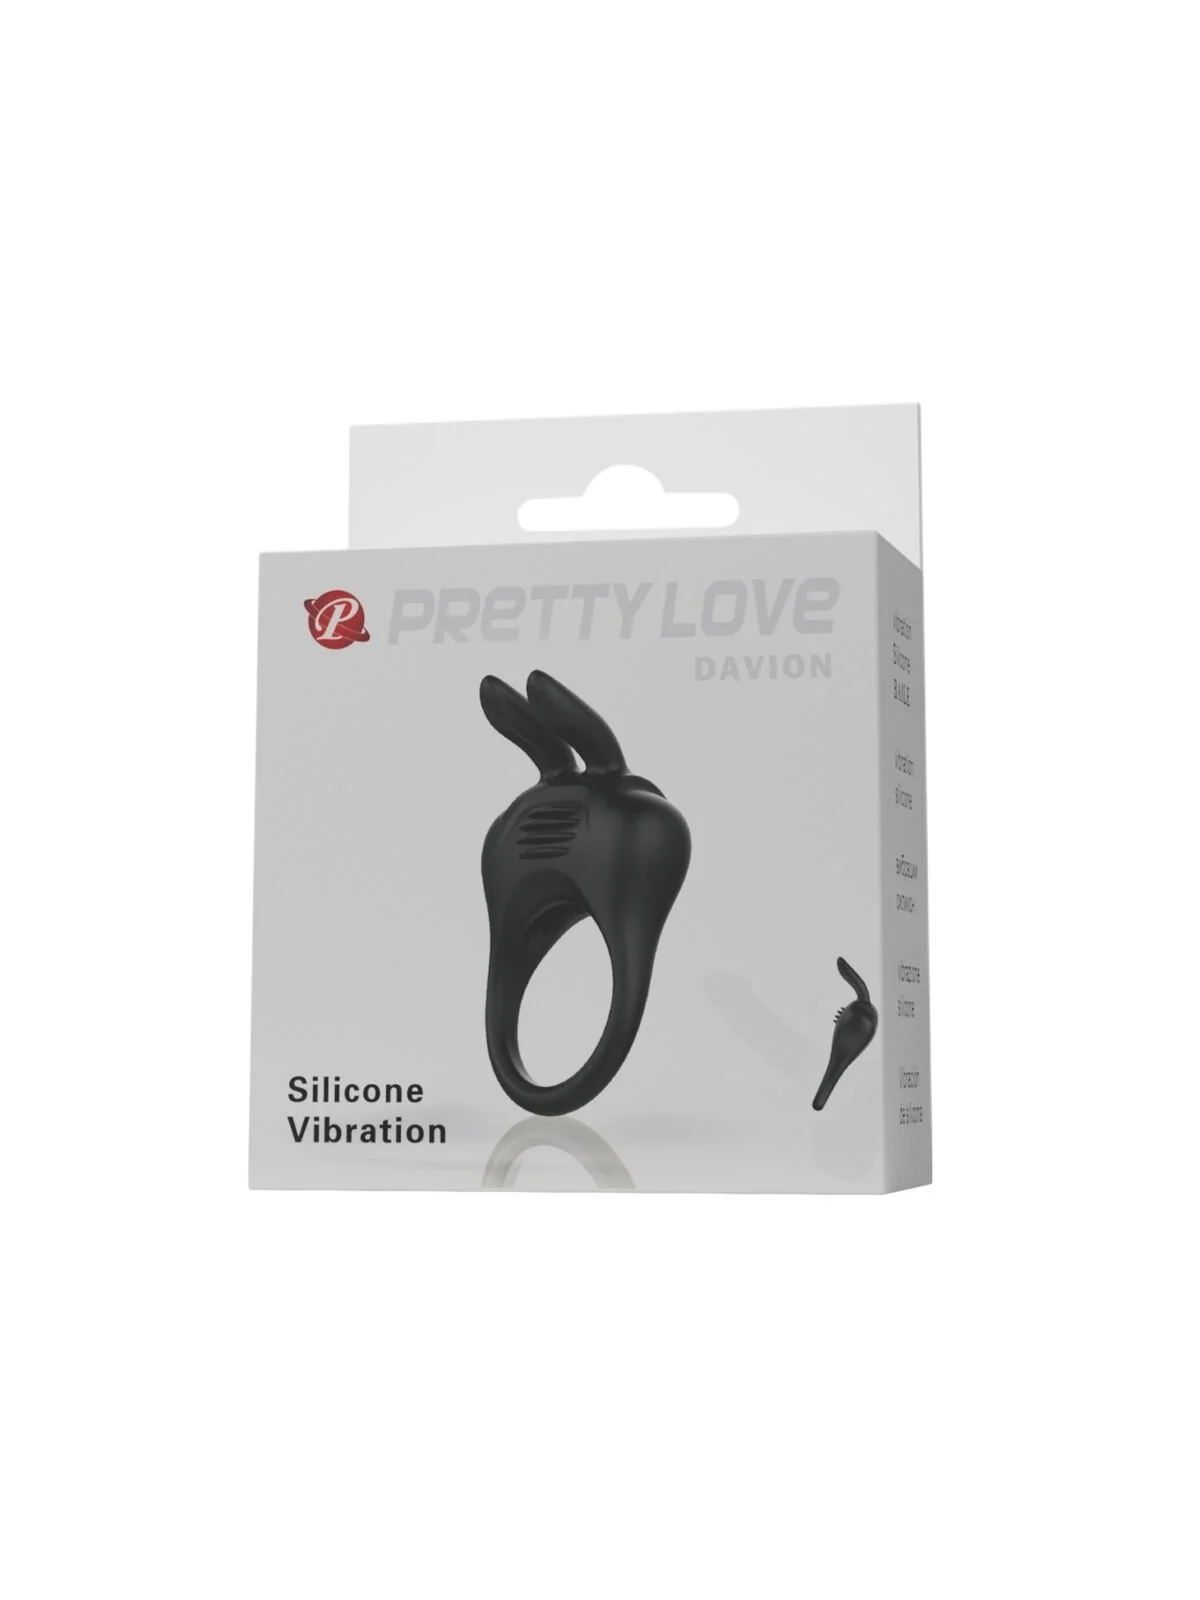 Davion Rabbit Vibrator Ring von Pretty Love